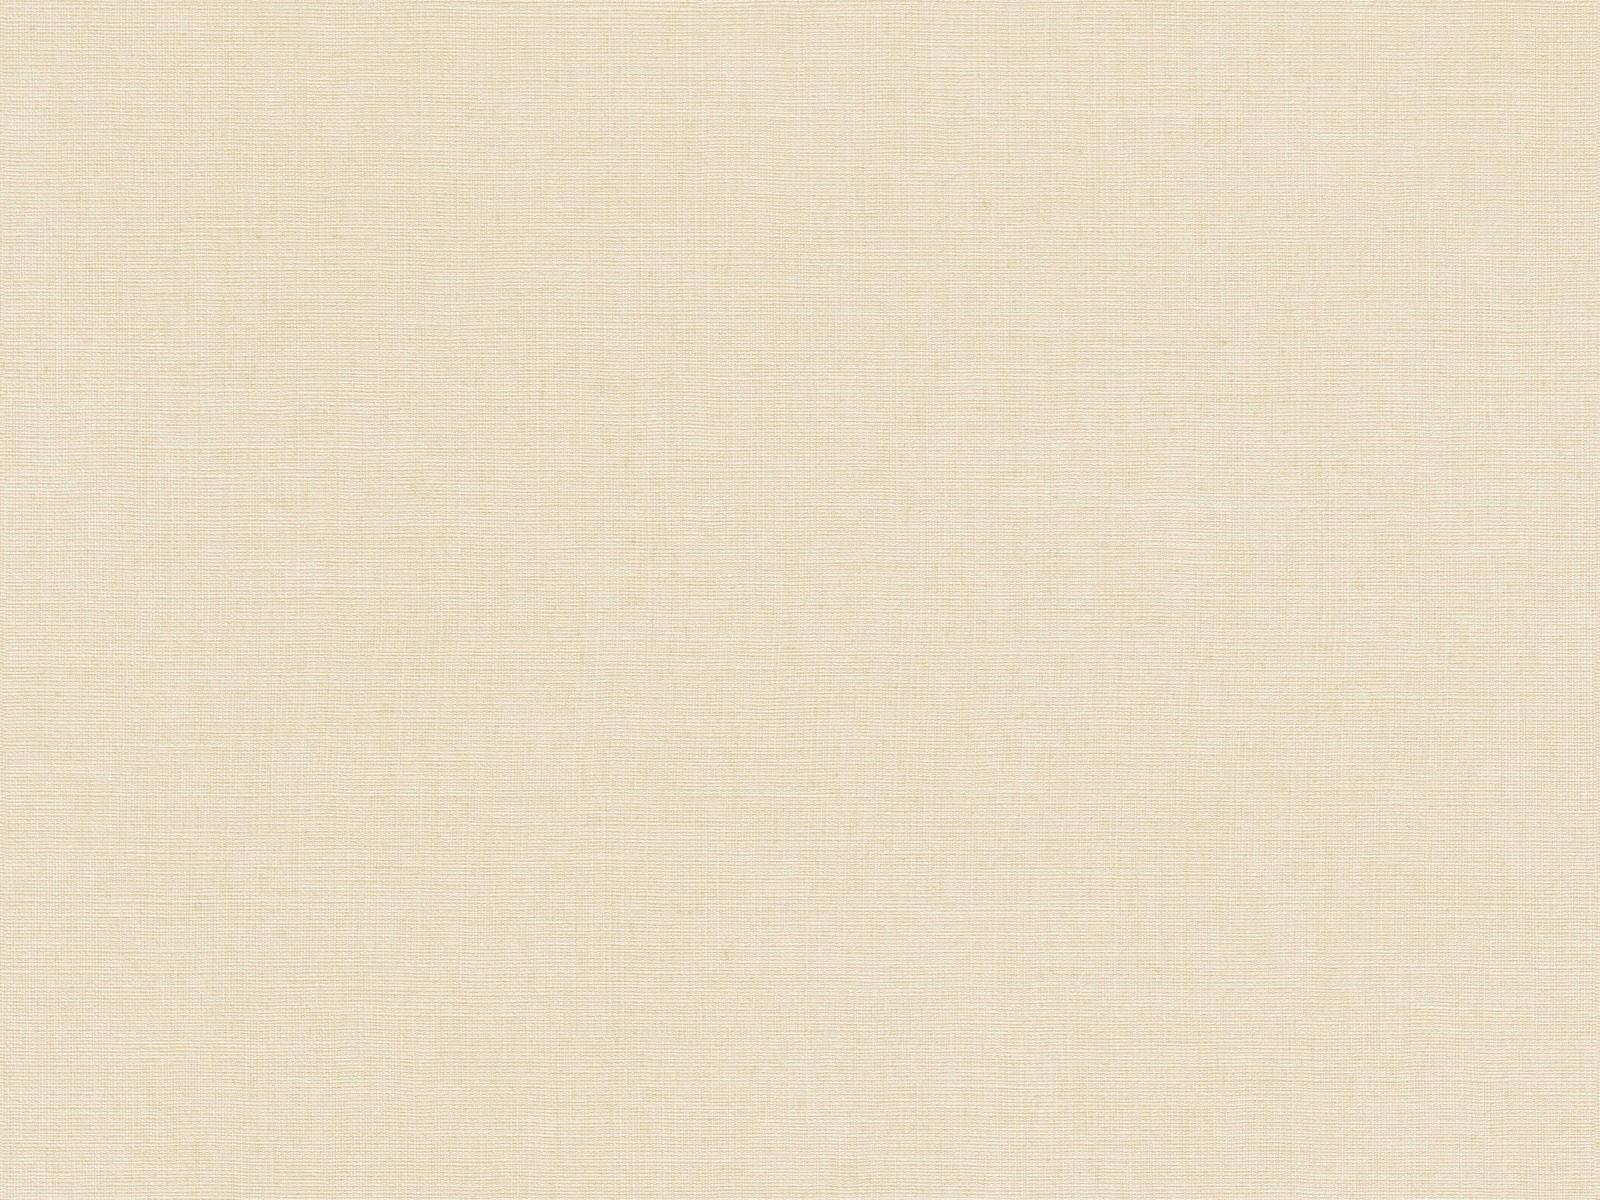 Vliesová tapeta s prirodzenou textilnou štruktúrou v krémovej farbe, ER-601641